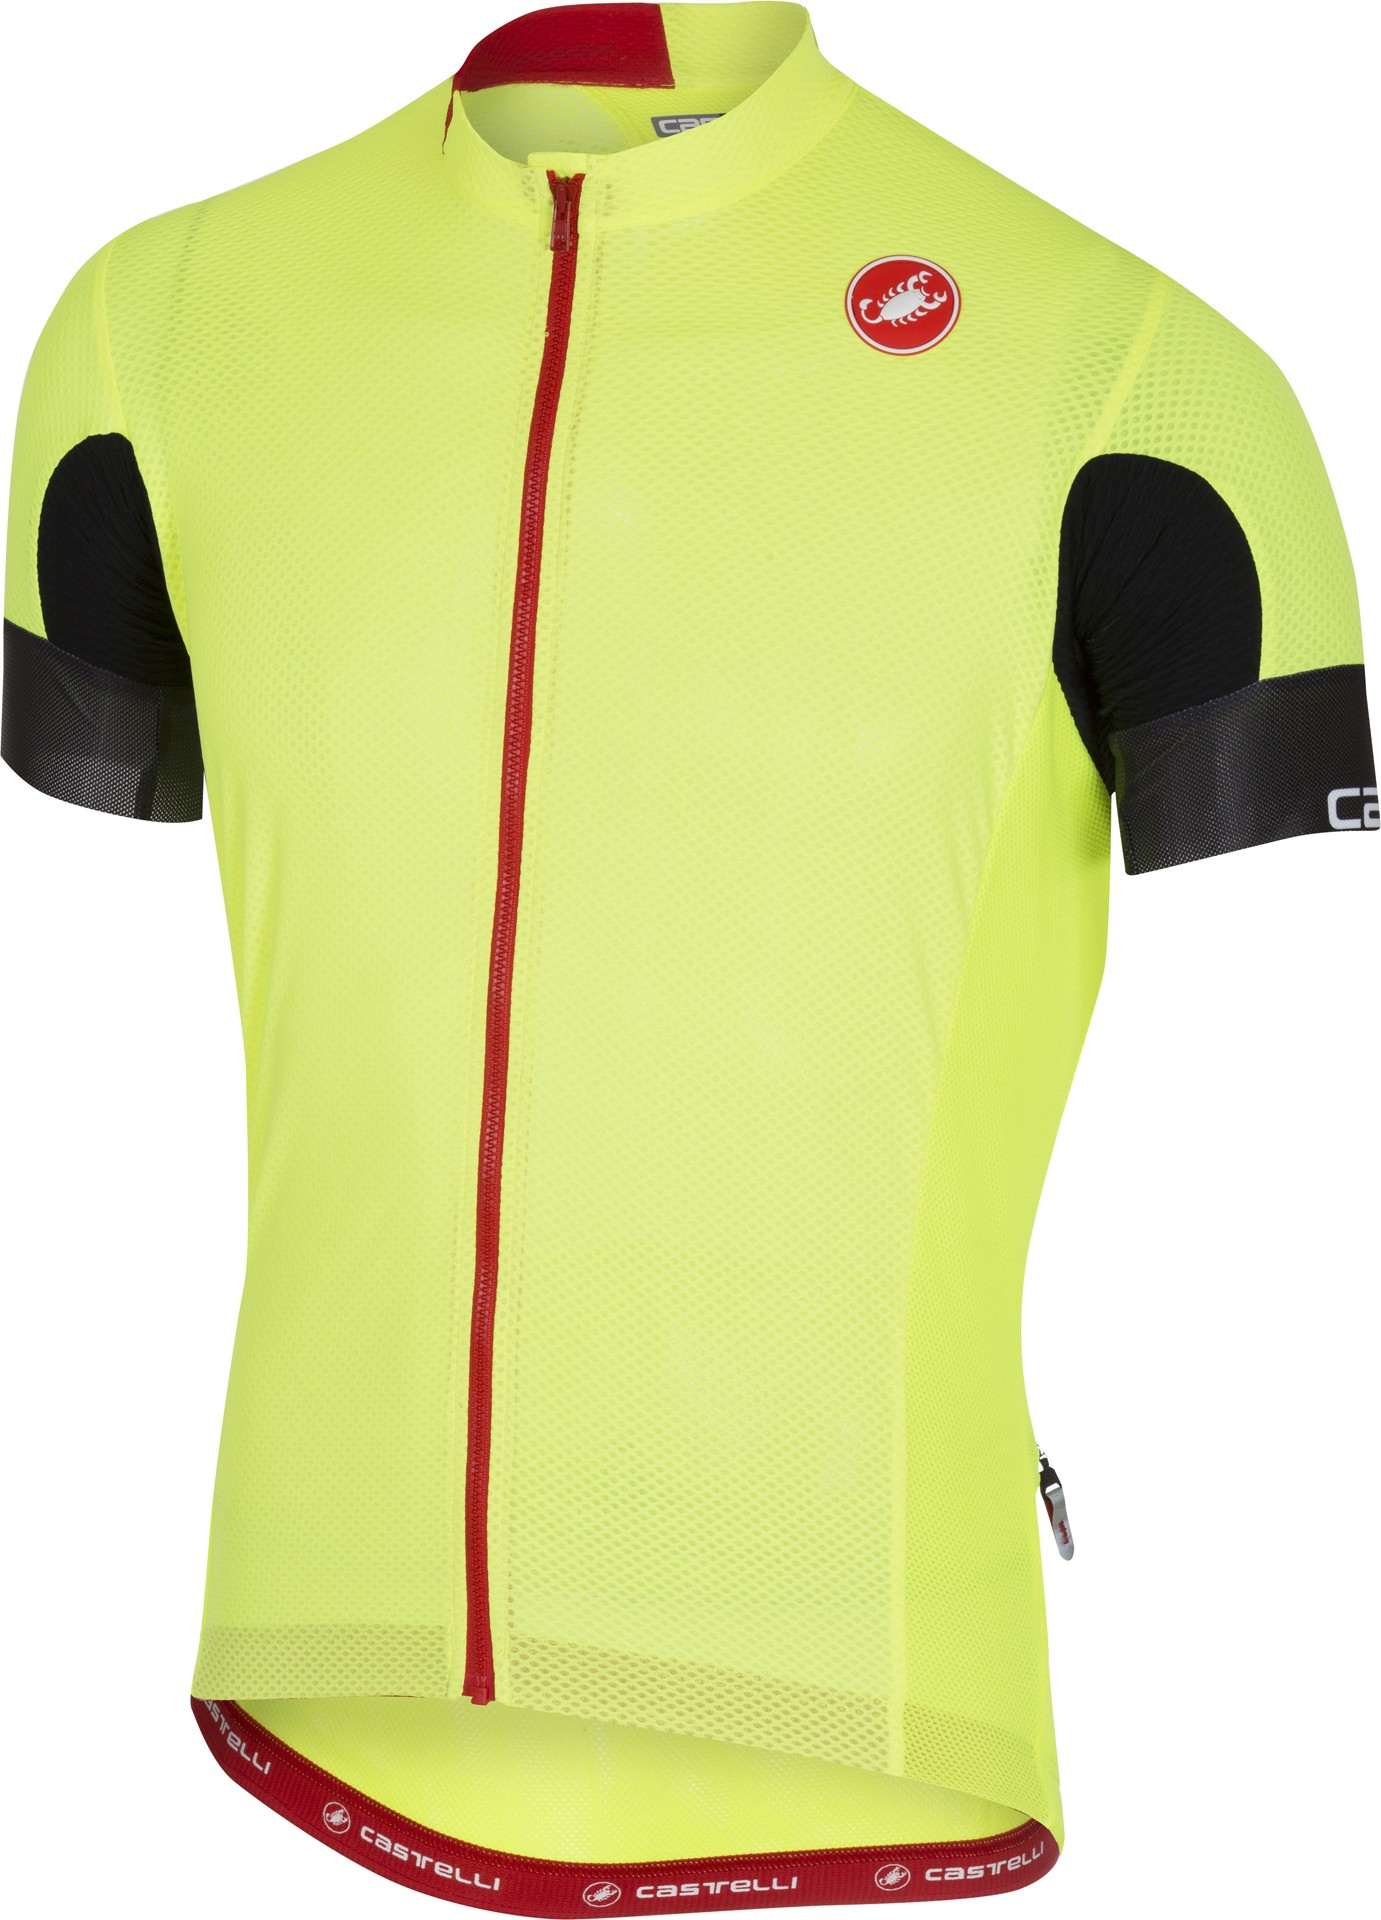 Castelli aero race 4.1 solid maillot de cyclisme manches courtes fluo jaune